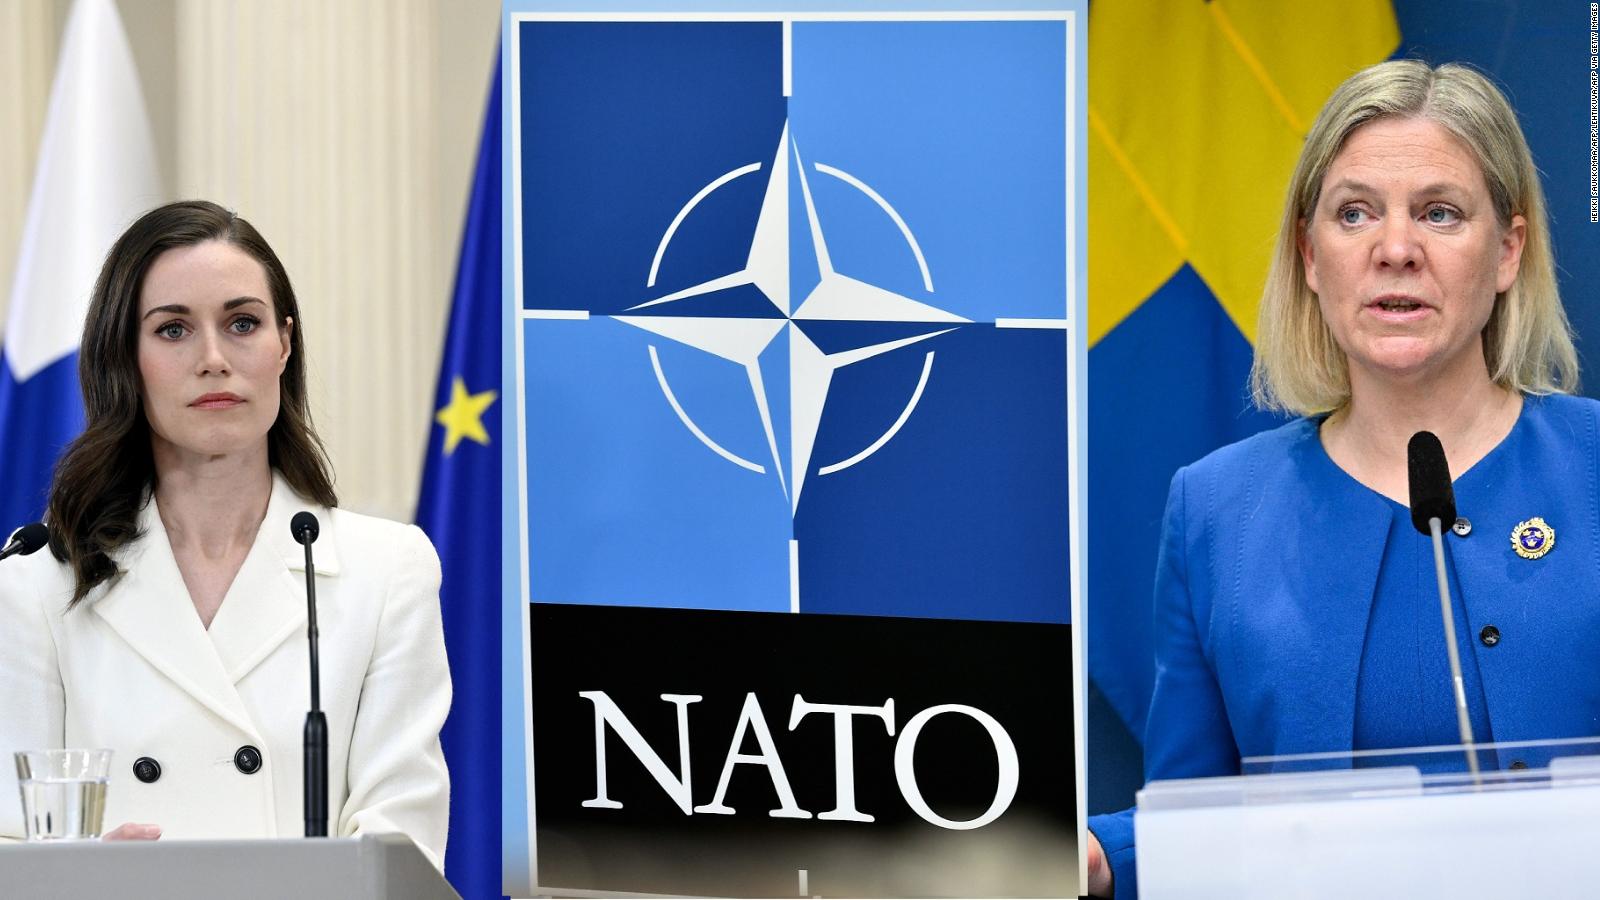 Qué requisitos deberán cumplir Suecia y Finlandia para sumarse a la OTAN?